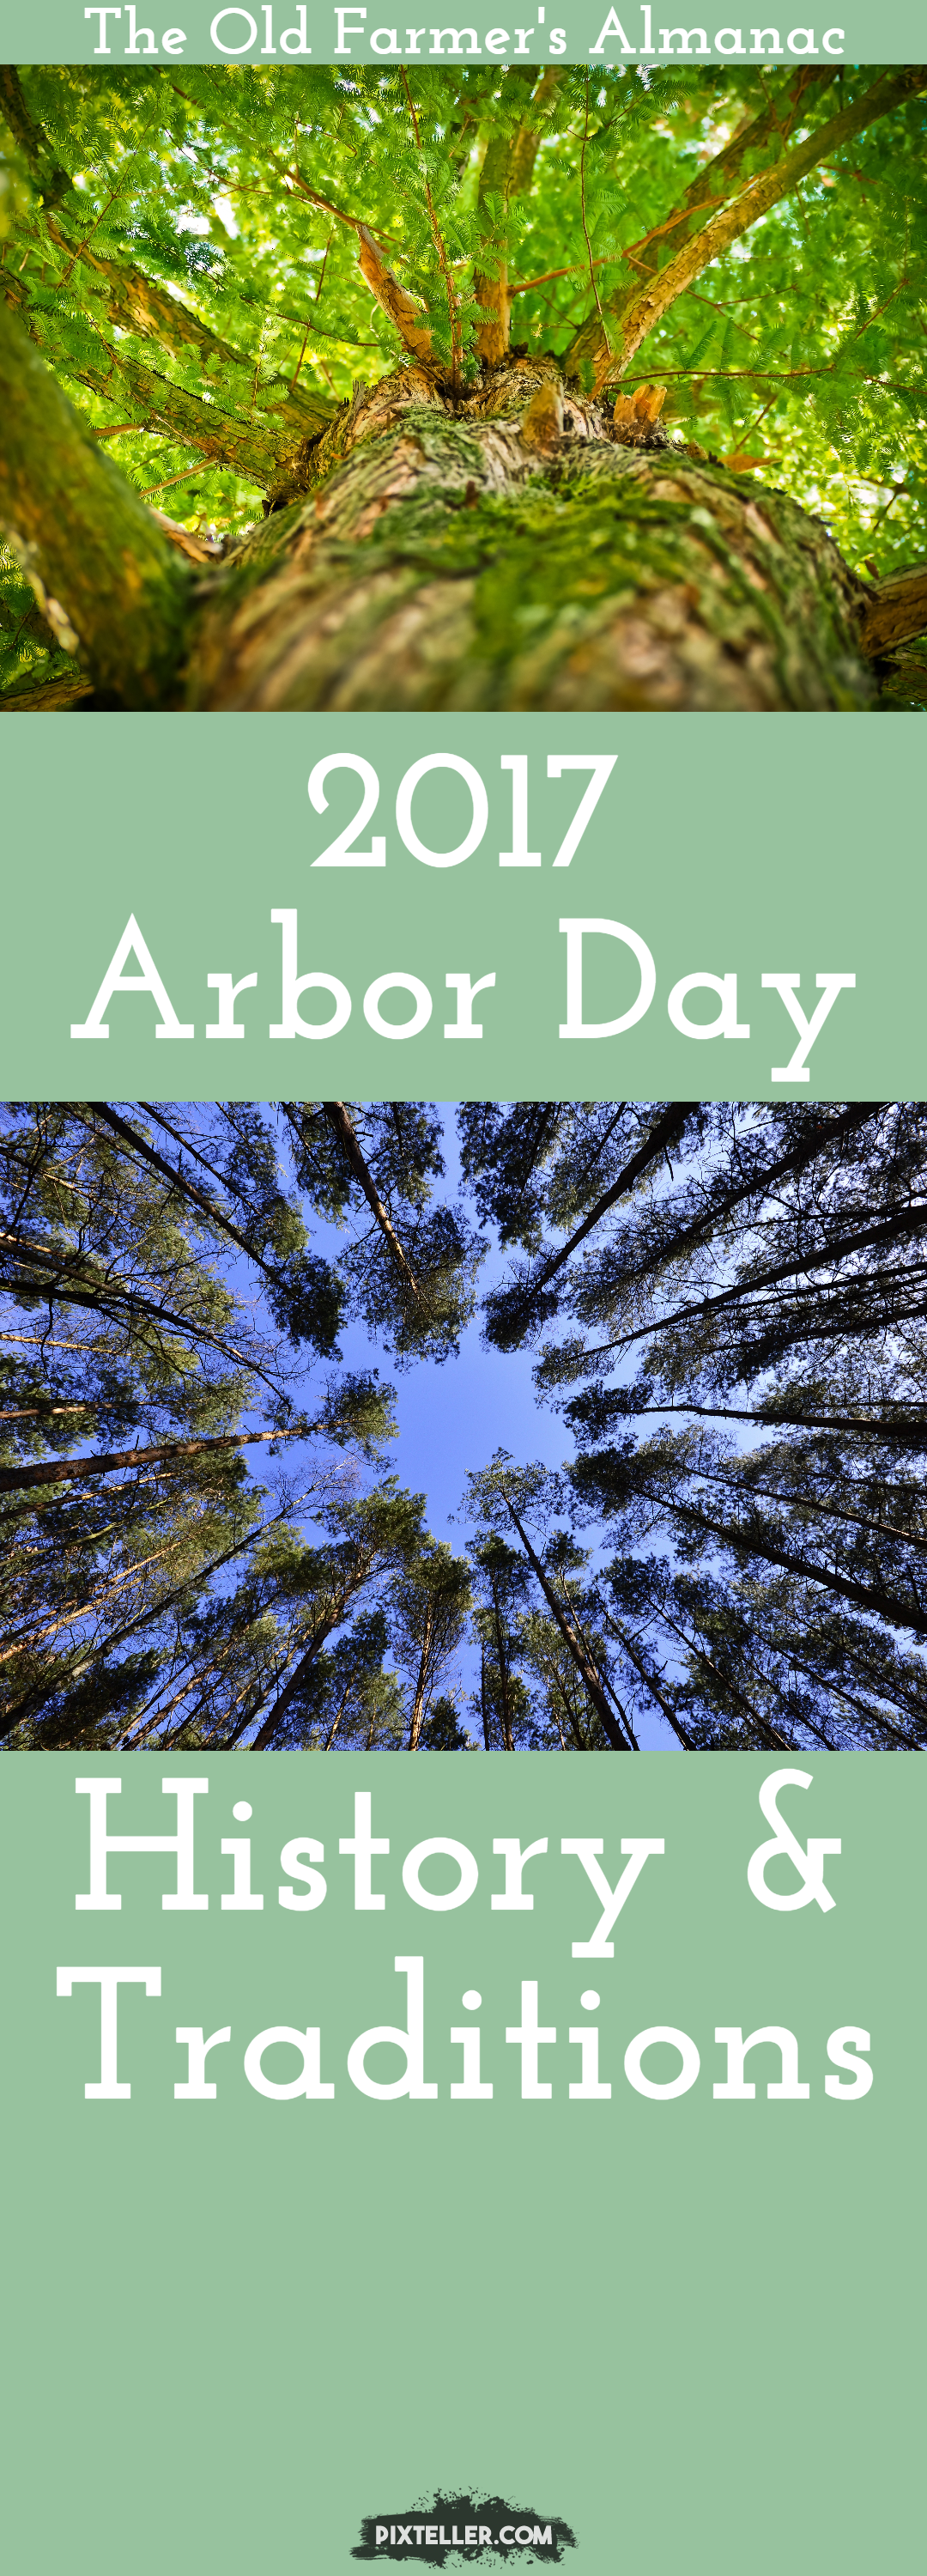 OFA 2-21-17 Arbor Day Design 